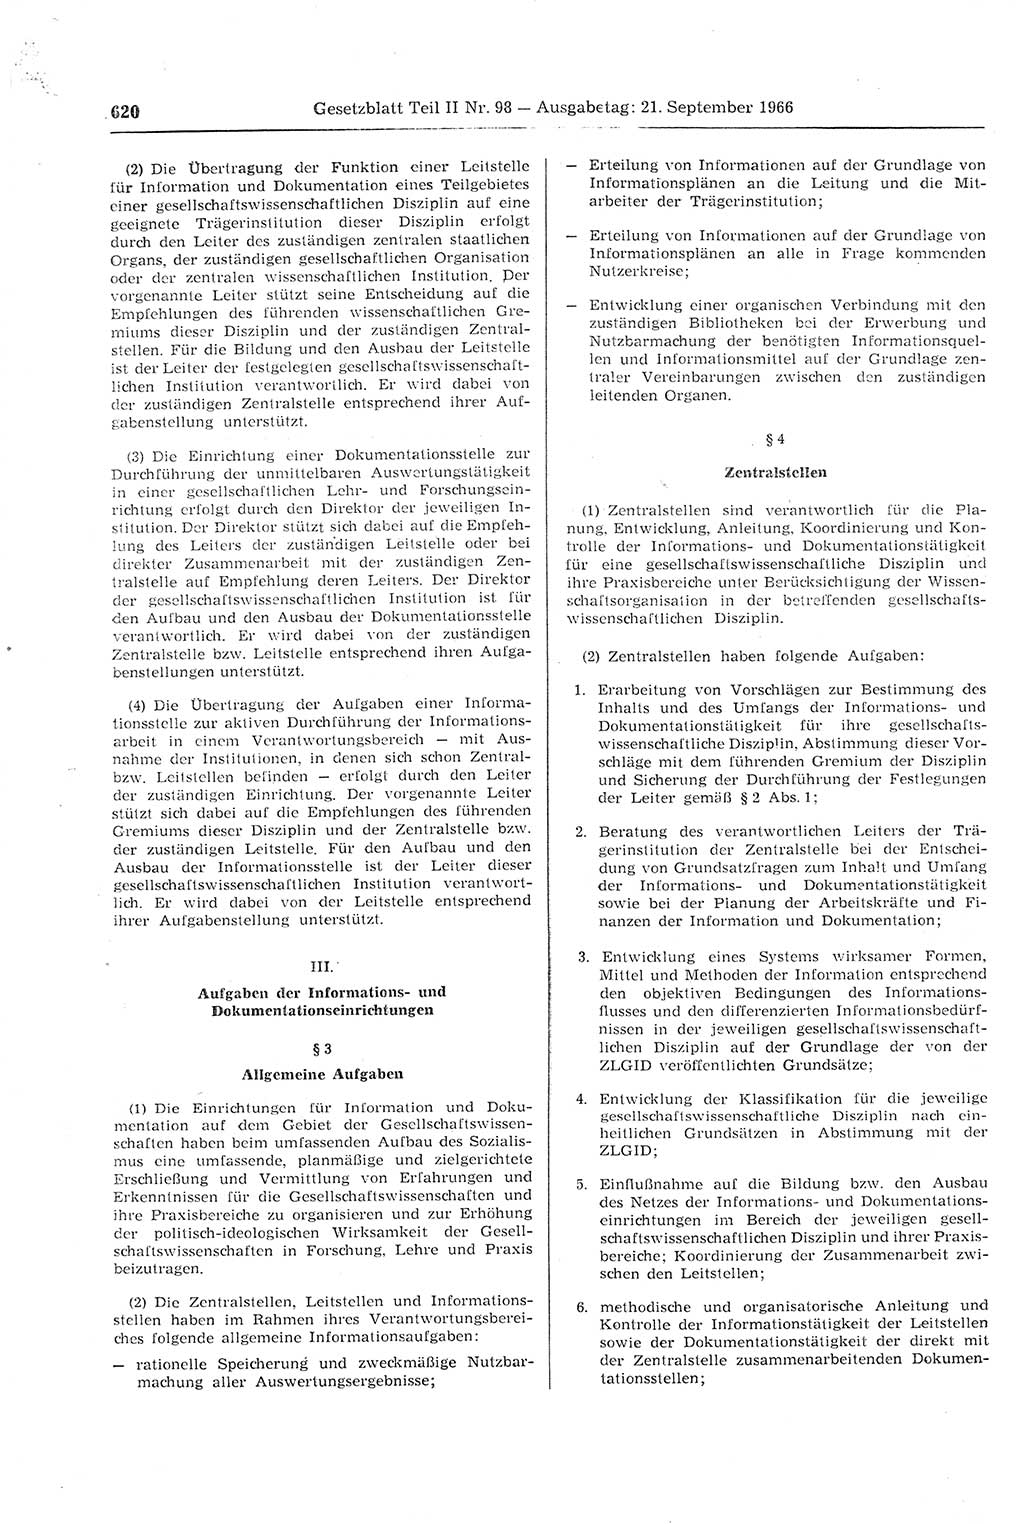 Gesetzblatt (GBl.) der Deutschen Demokratischen Republik (DDR) Teil ⅠⅠ 1966, Seite 620 (GBl. DDR ⅠⅠ 1966, S. 620)